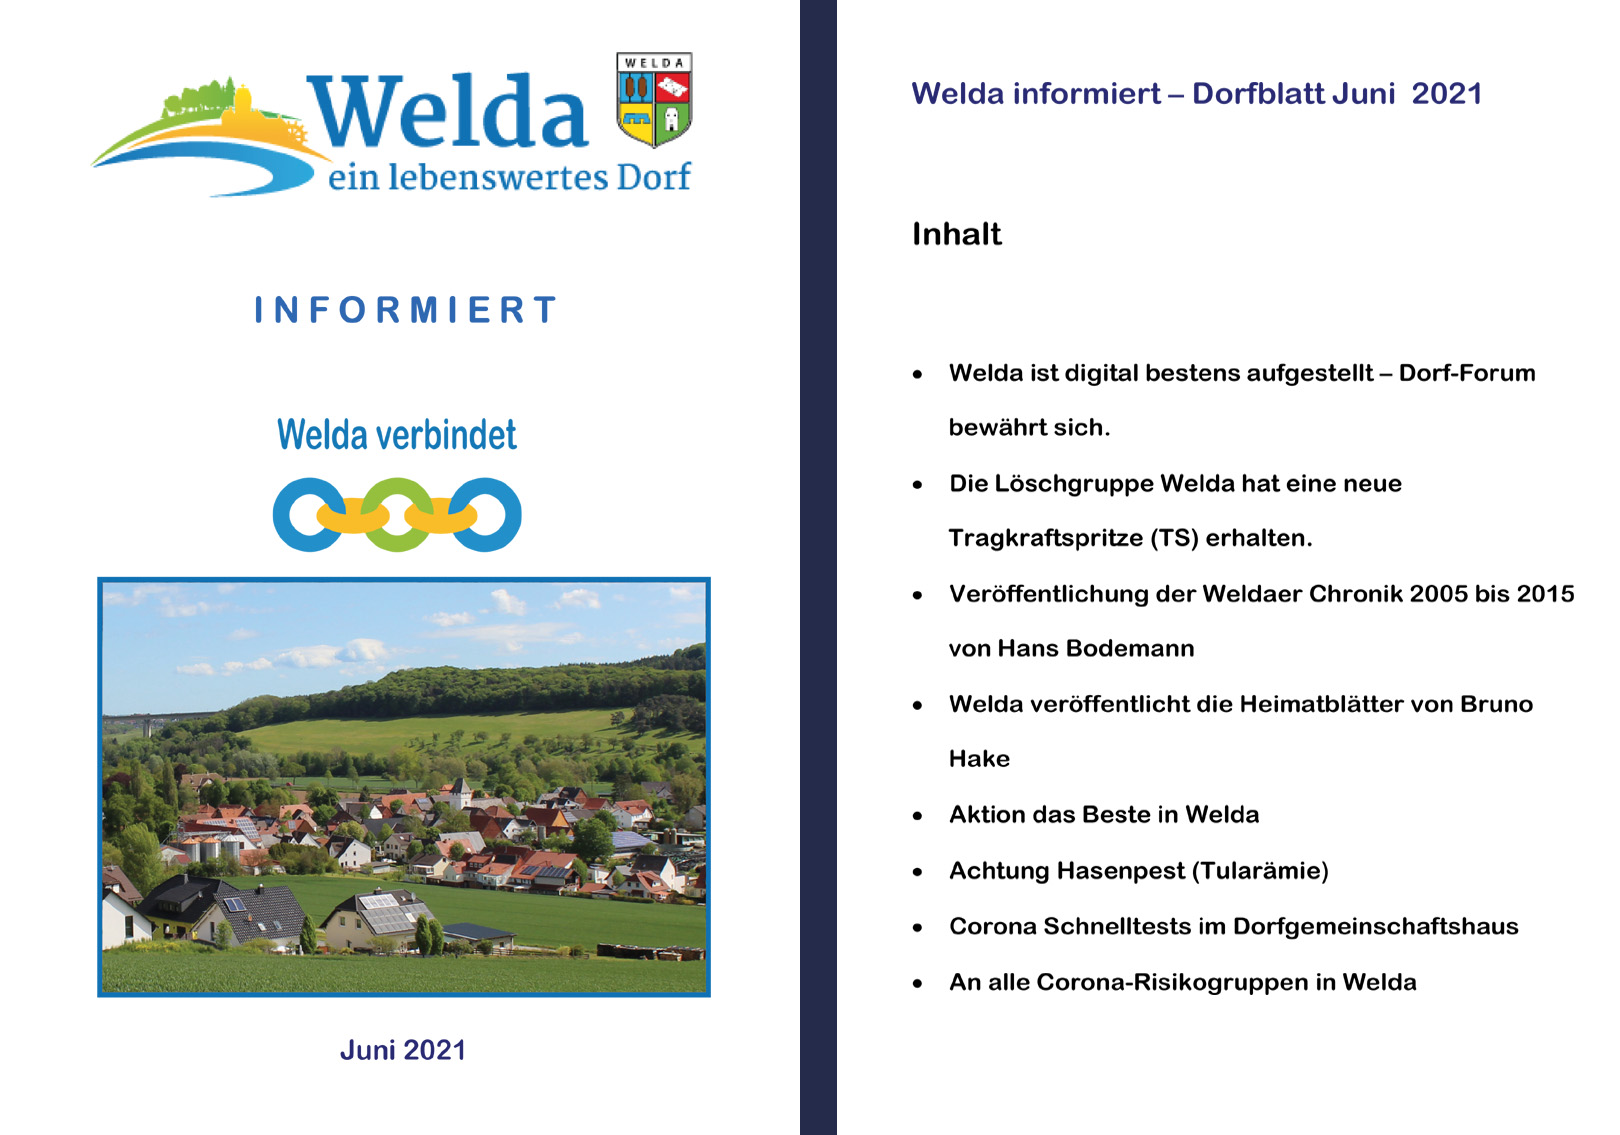 Welda Informiert - Dorfblatt Juni 2021